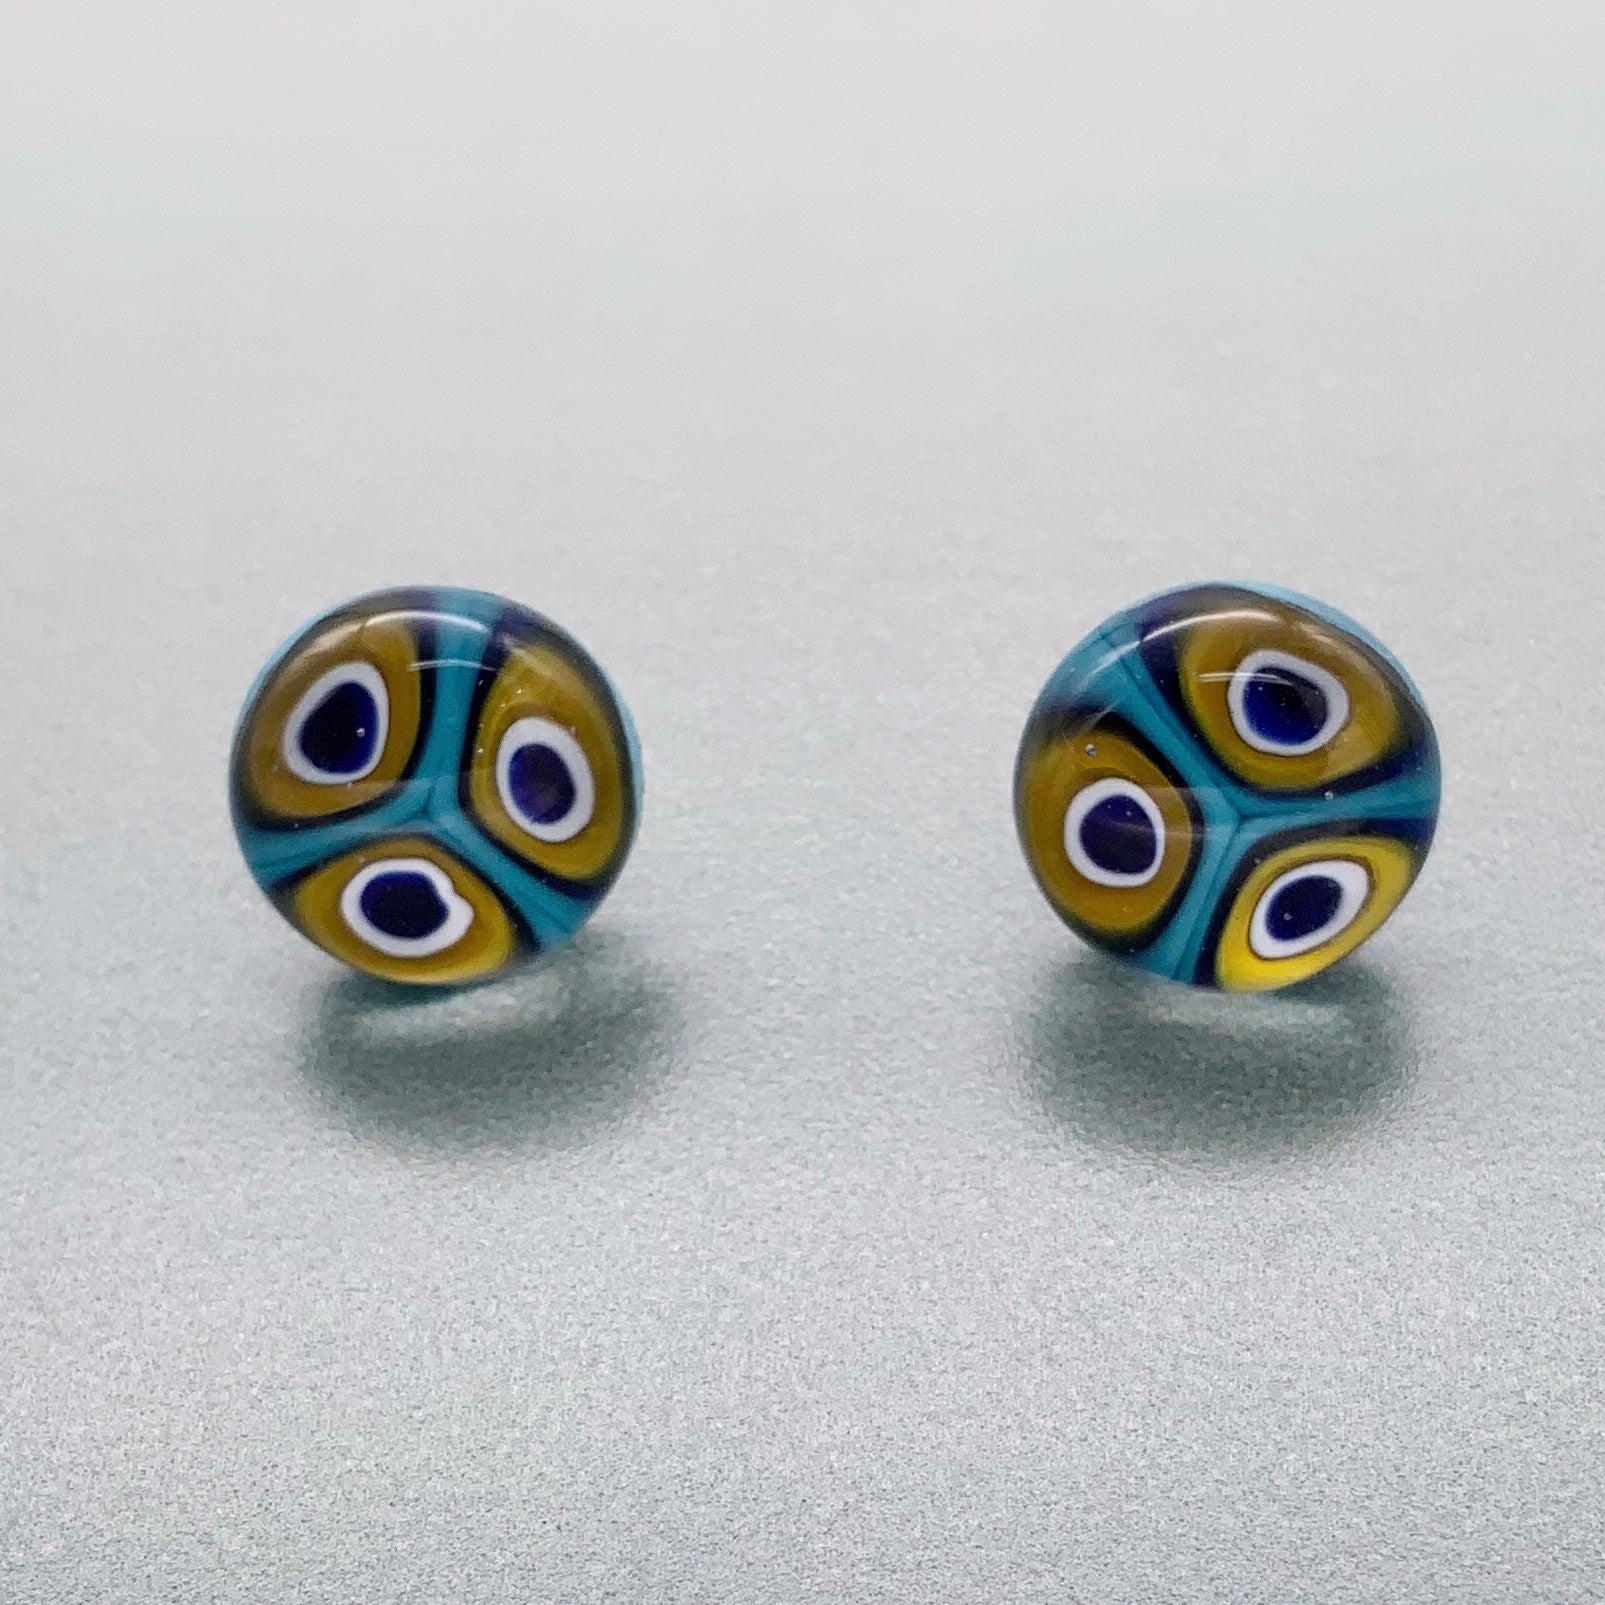 Peacock inspired glass stud earrings